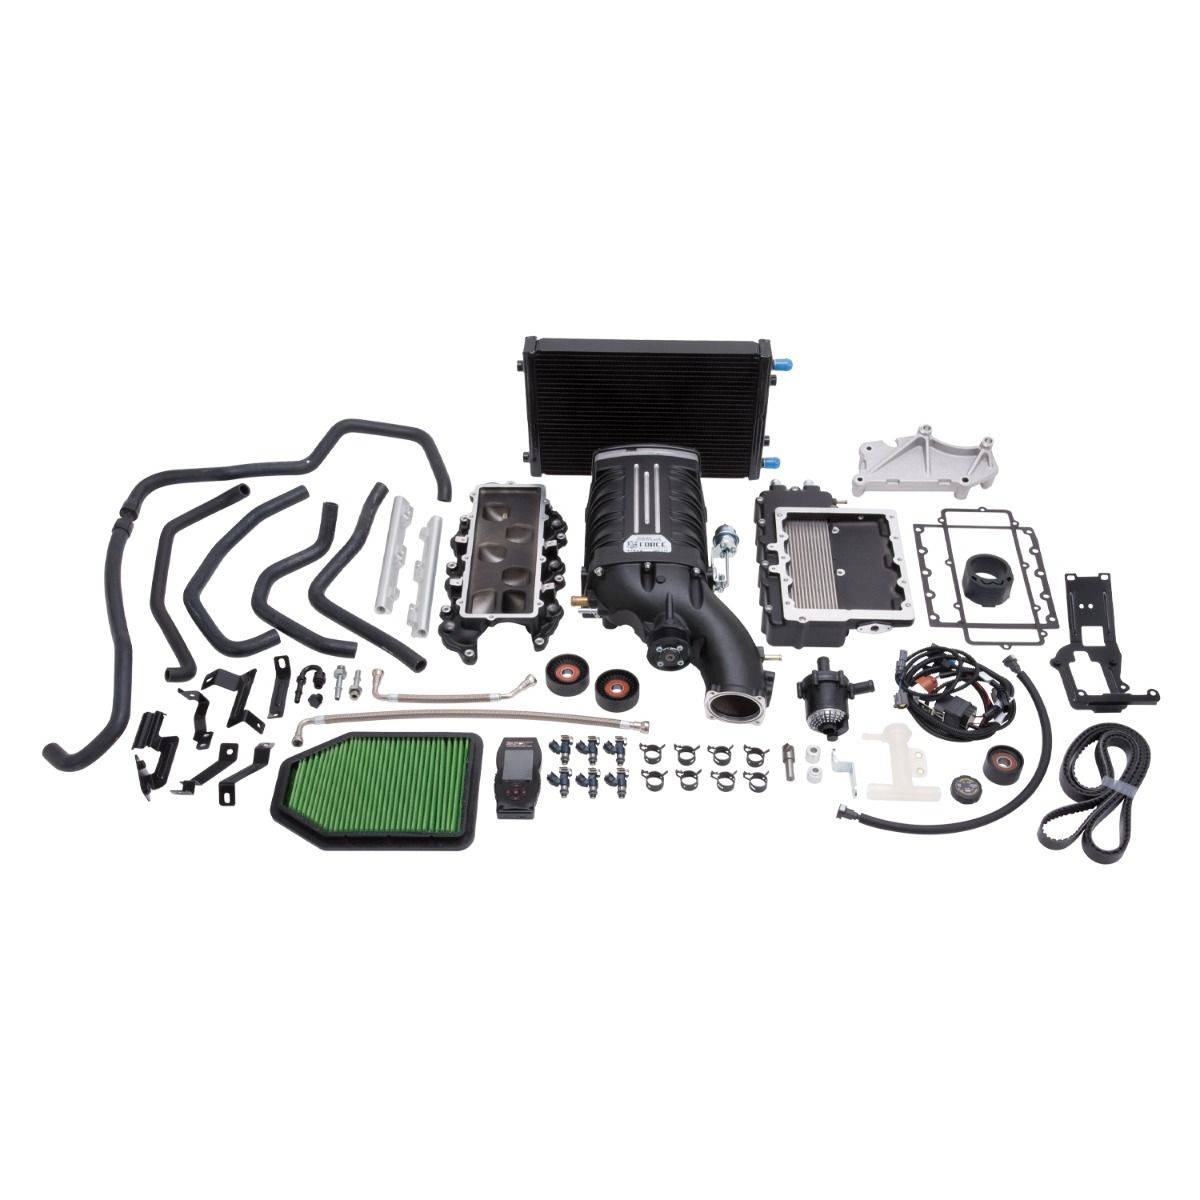 Edelbrock - Jeep Wrangler JK 3.6L 2015-2018 Edelbrock Stage 1 Complete Supercharger Intercooled Kit With Tune - Image 1